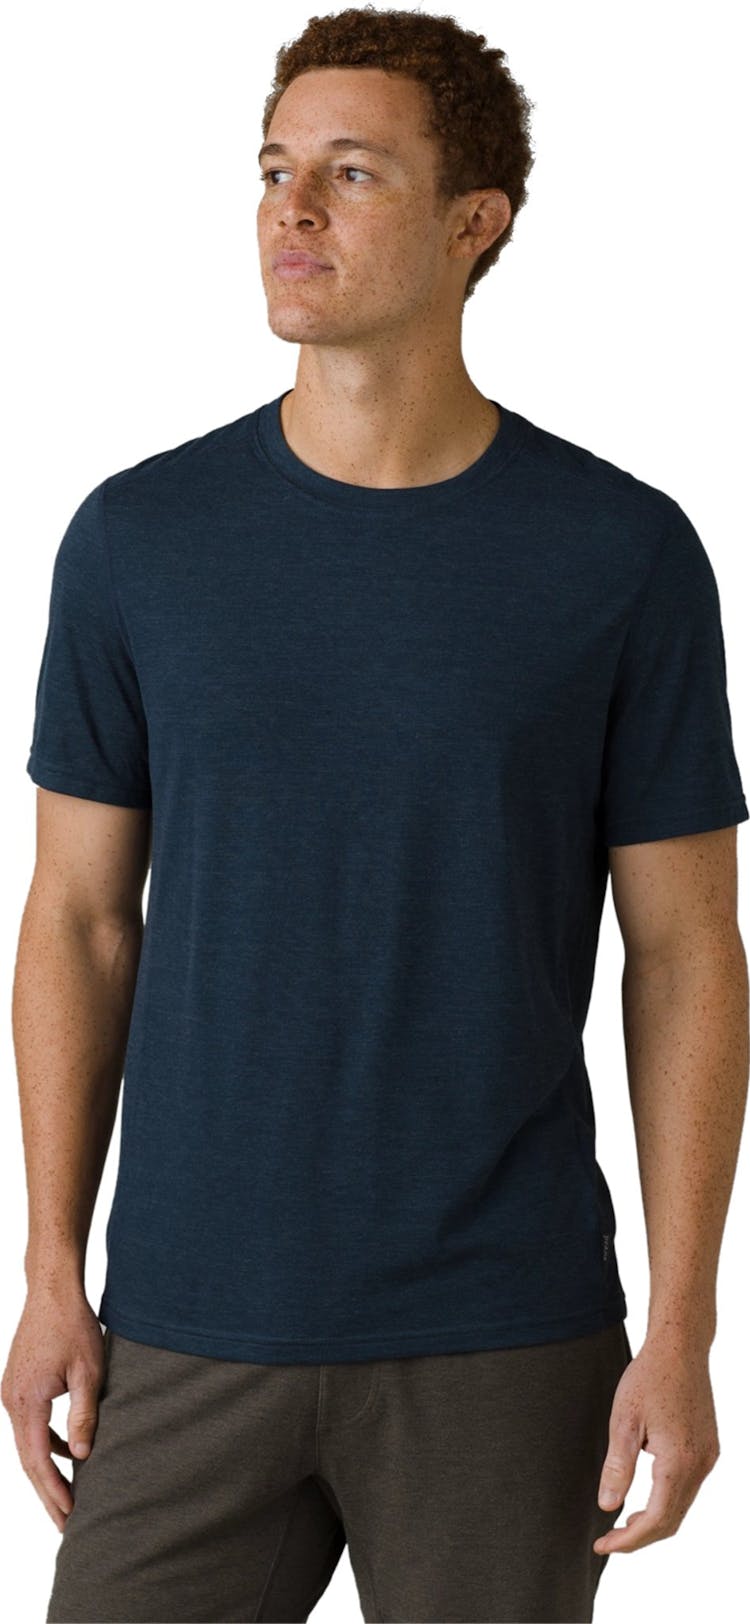 Numéro de l'image de la galerie de produits 1 pour le produit T-shirt à col rond Prospect Heights - Homme